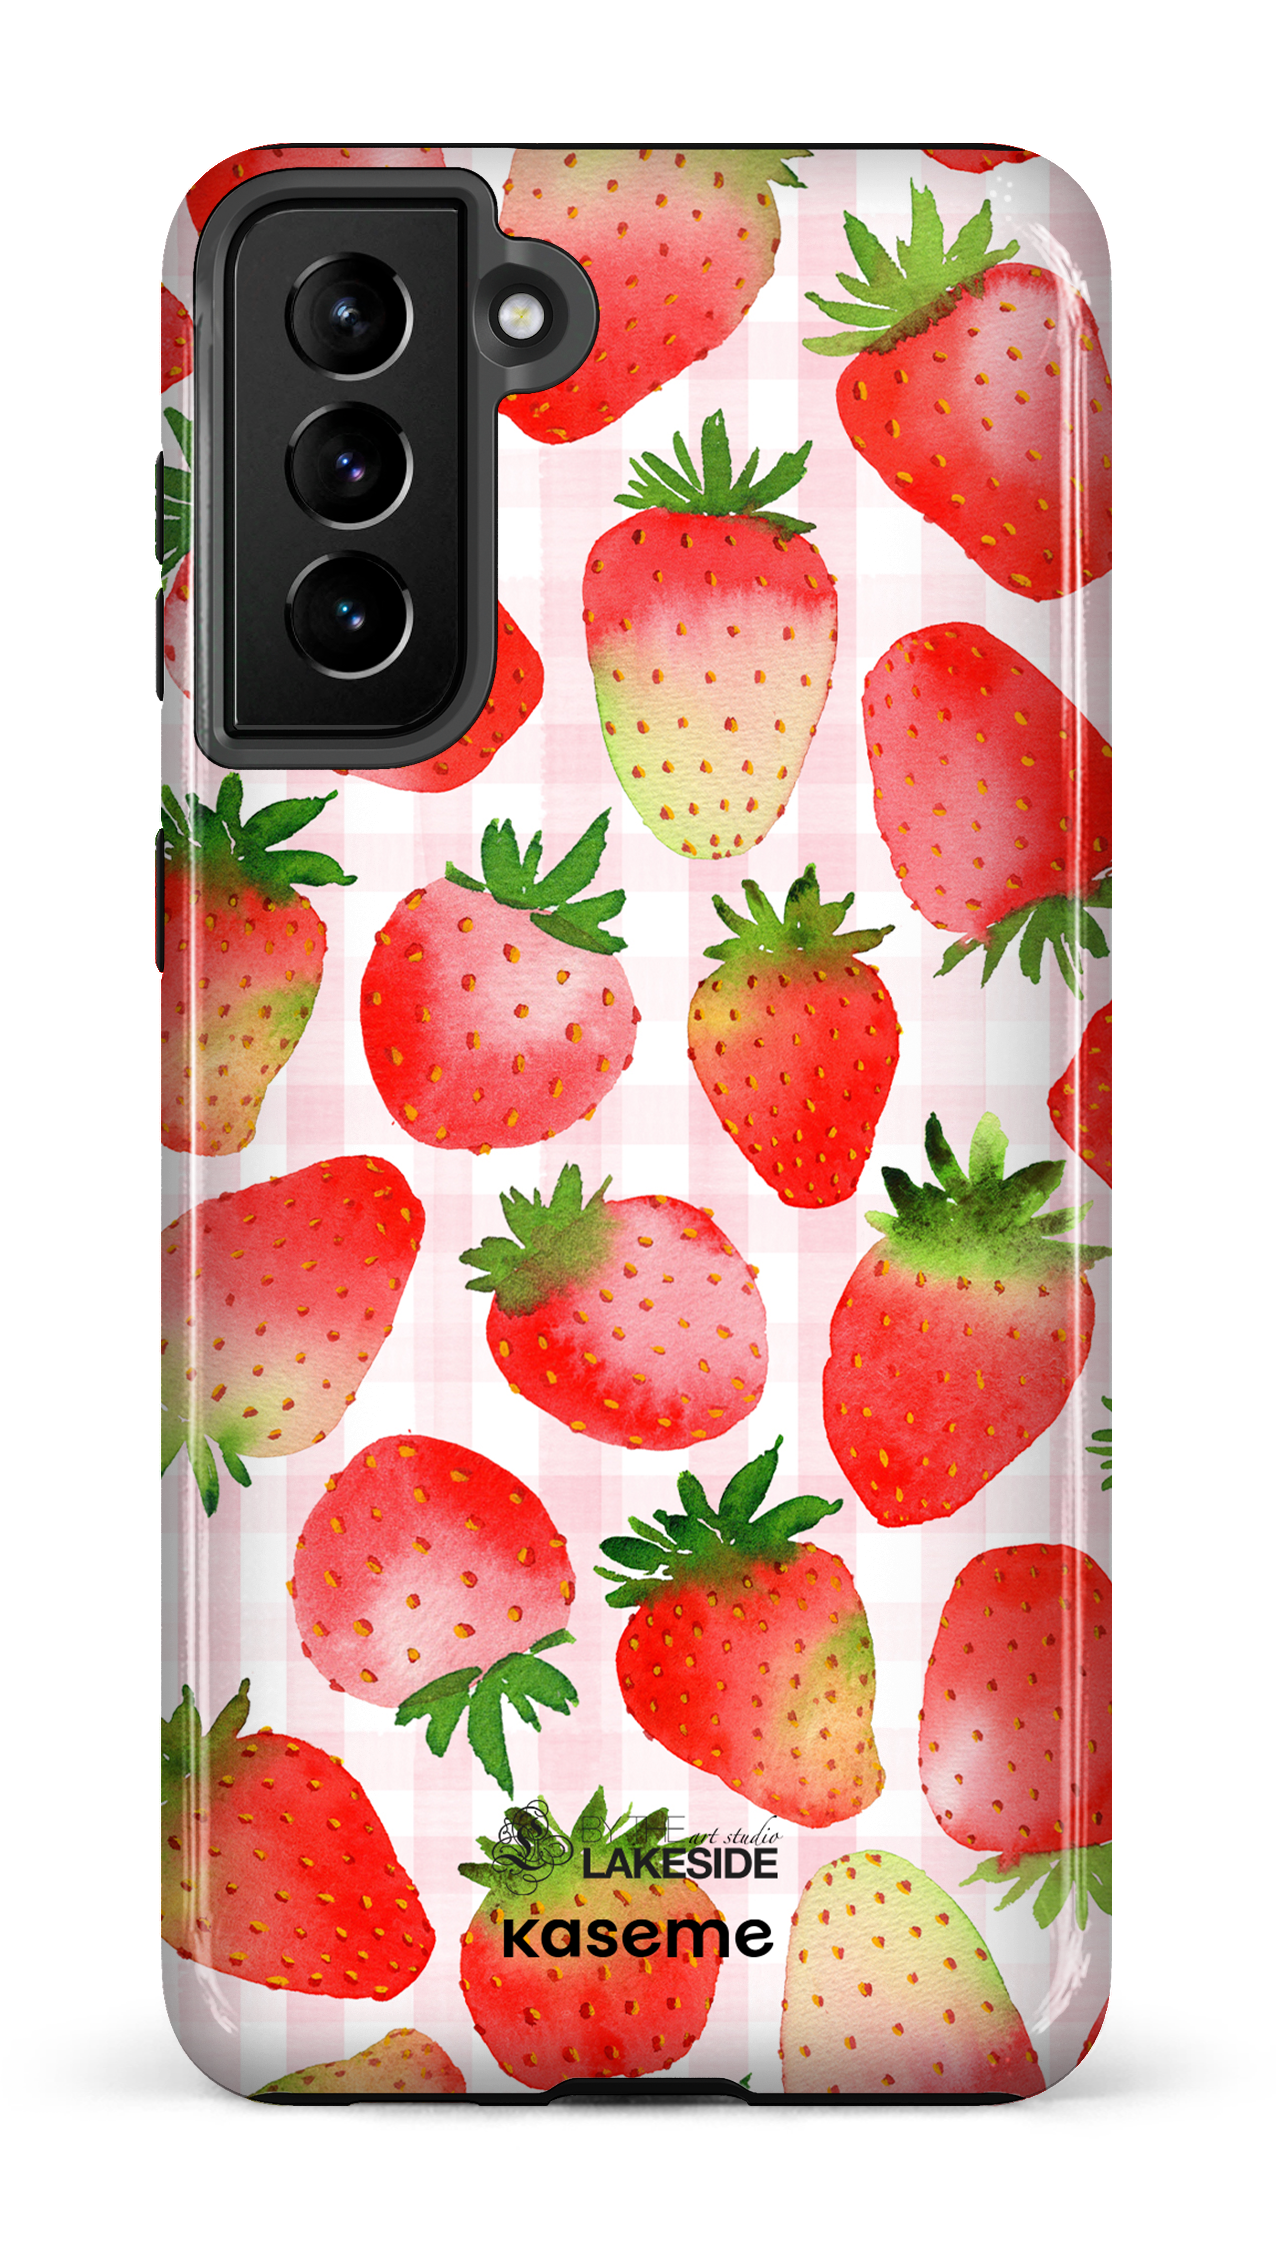 Strawberry Fields by Pooja Umrani - Galaxy S21 Plus